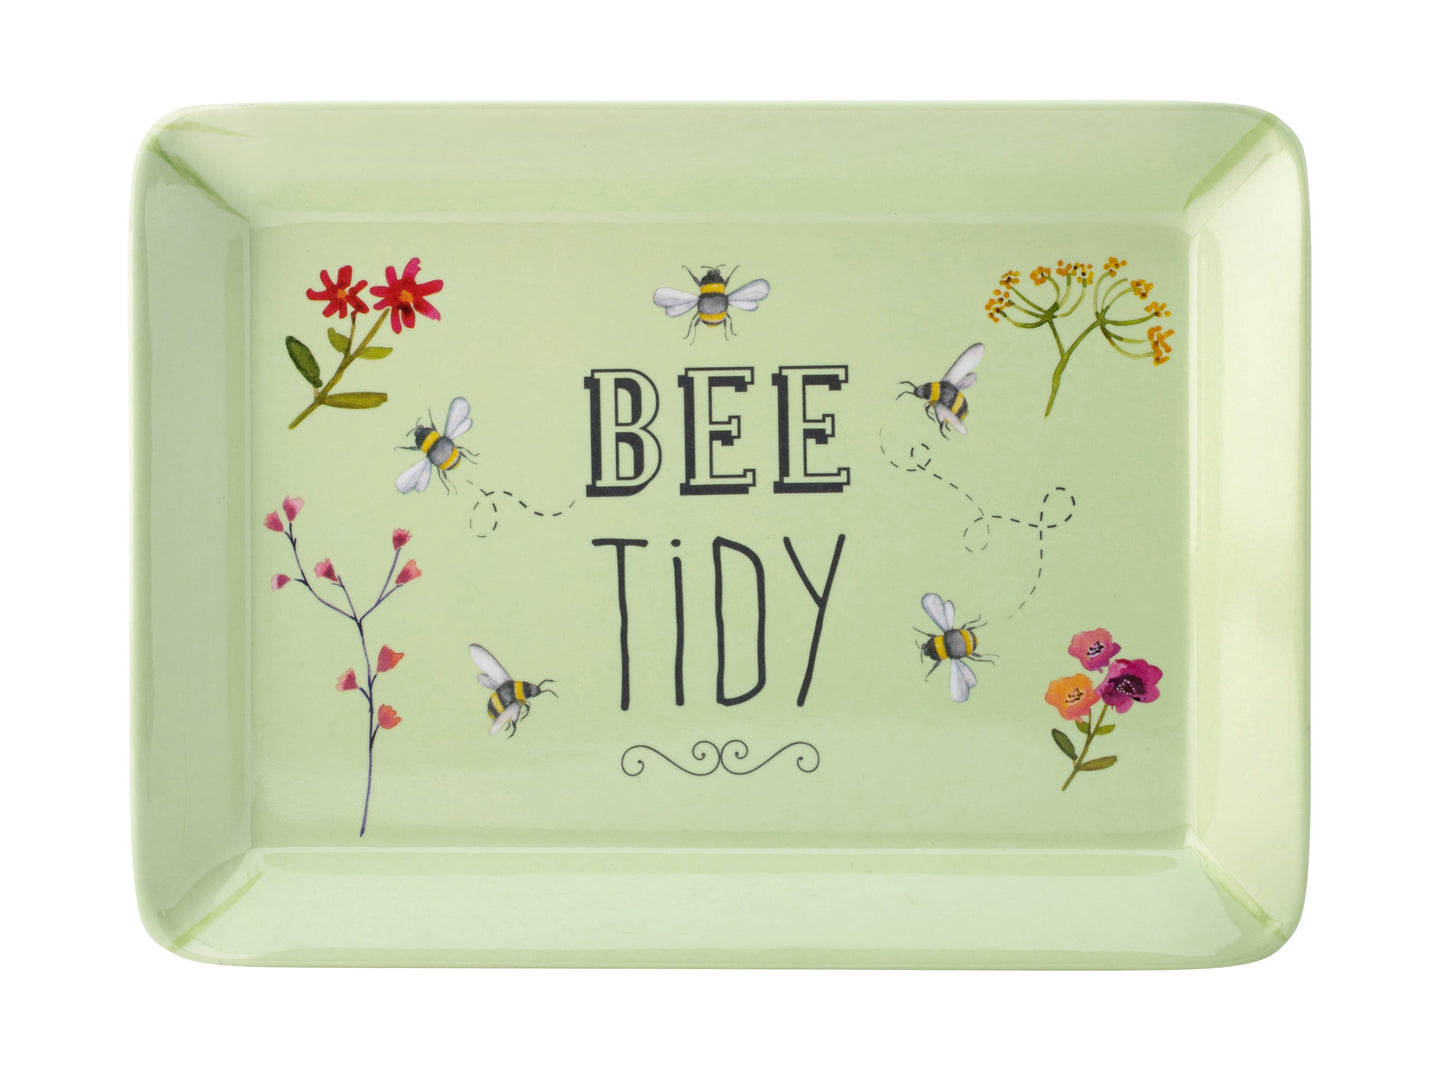 Bee Happy Tidy Serving Melamine Mini Tray